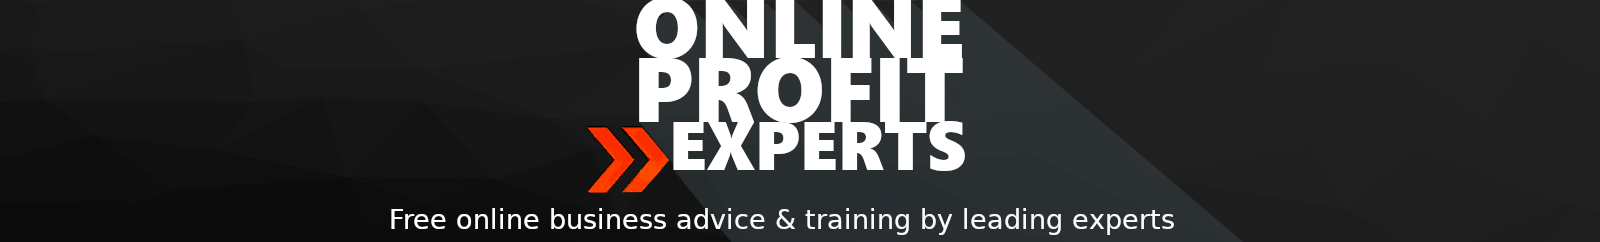 Online Profit Experts